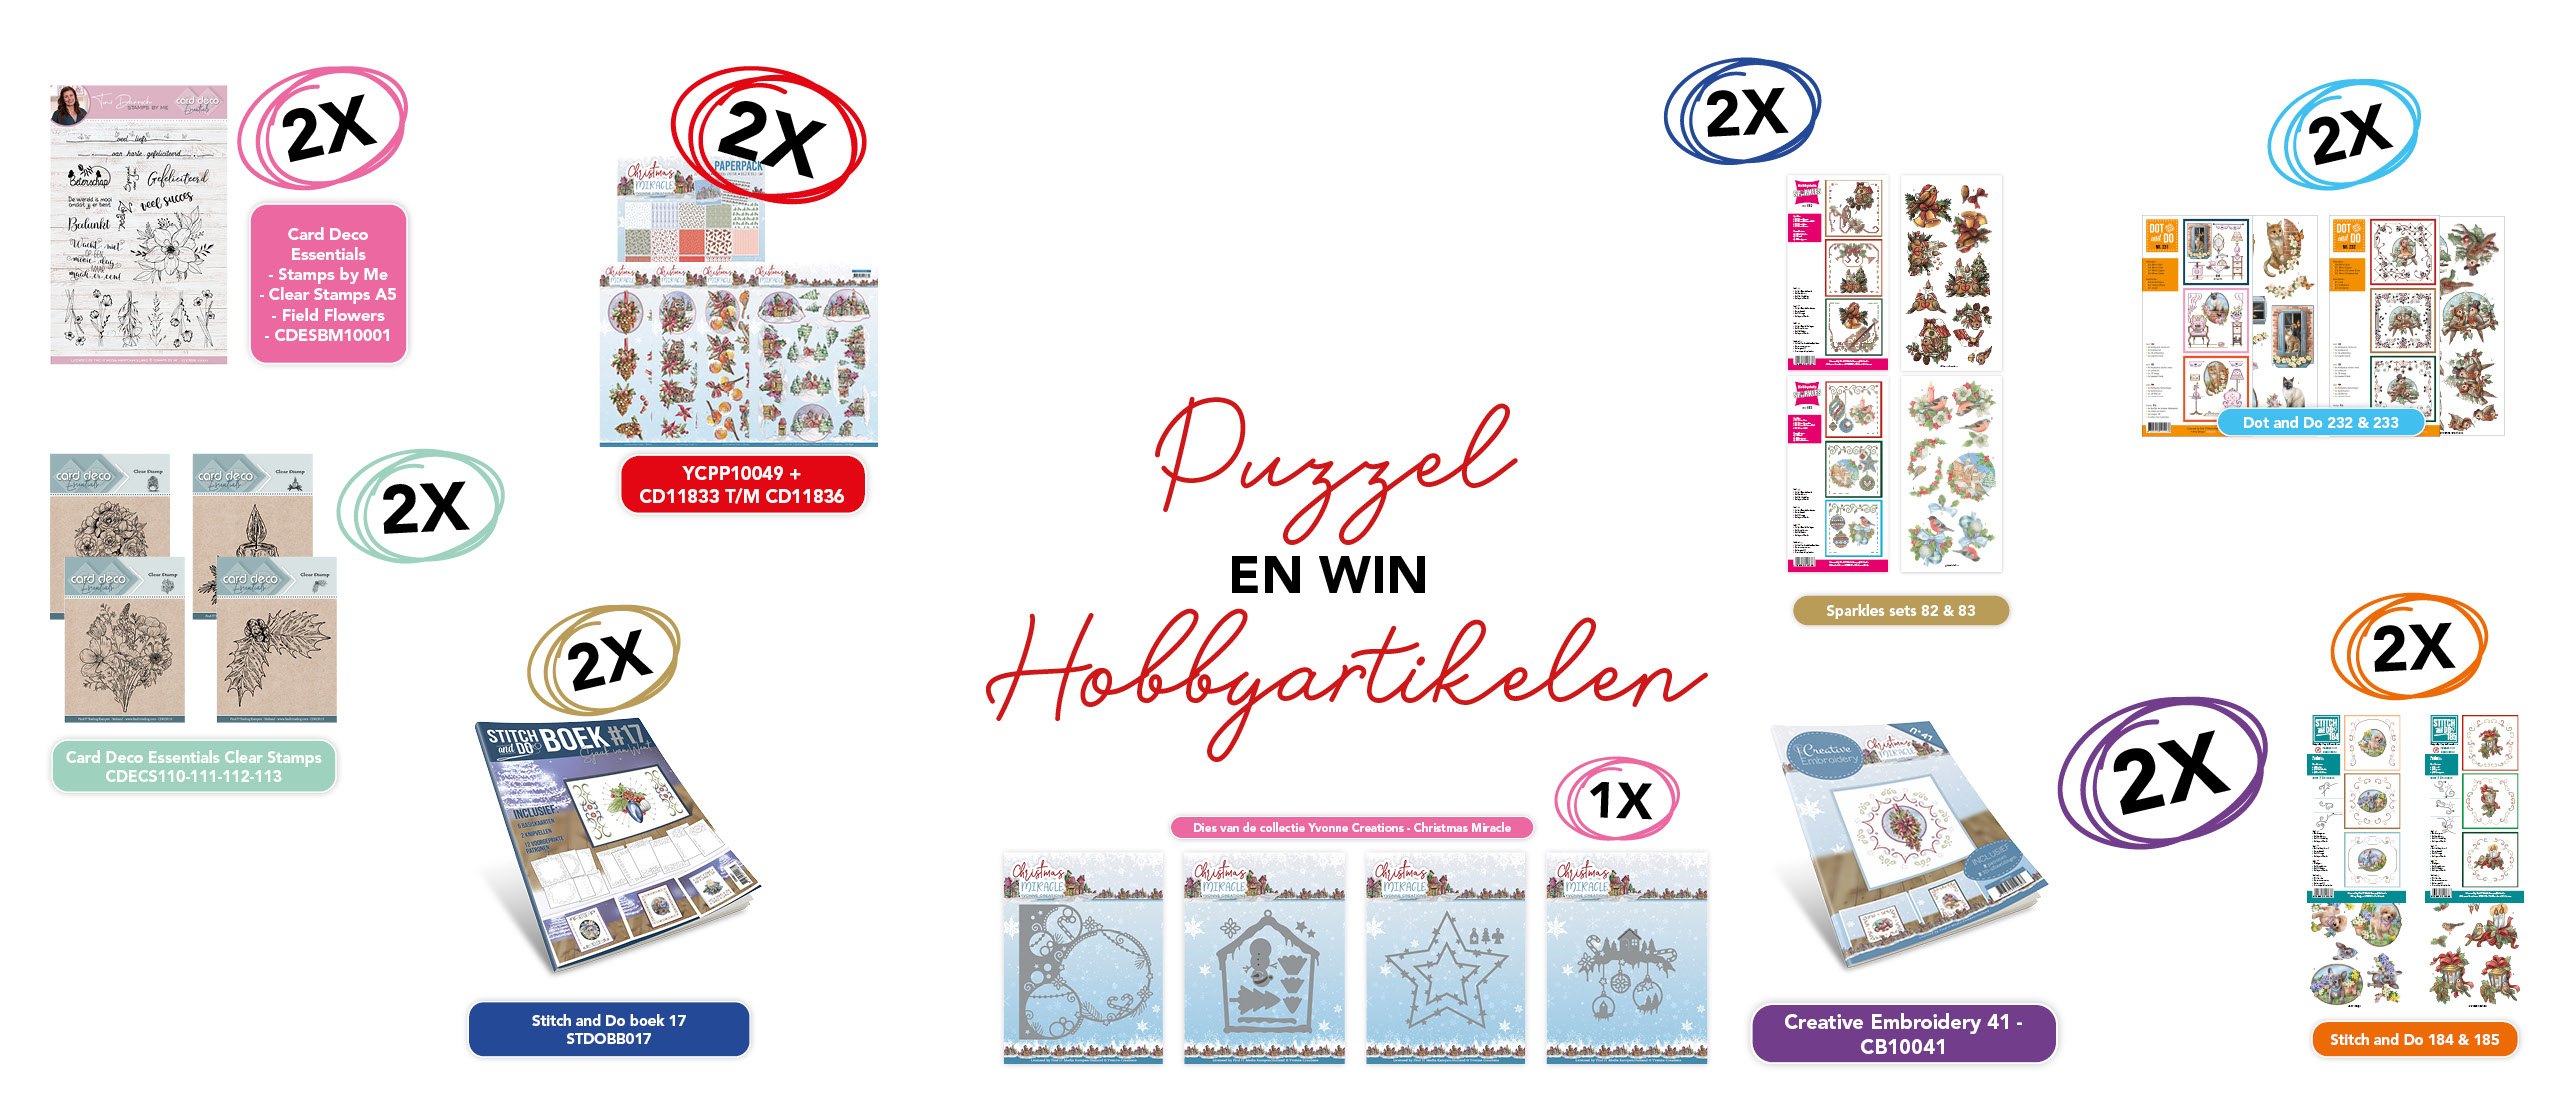 Puzzelprijzen winnen met Hobbyjournaal 209